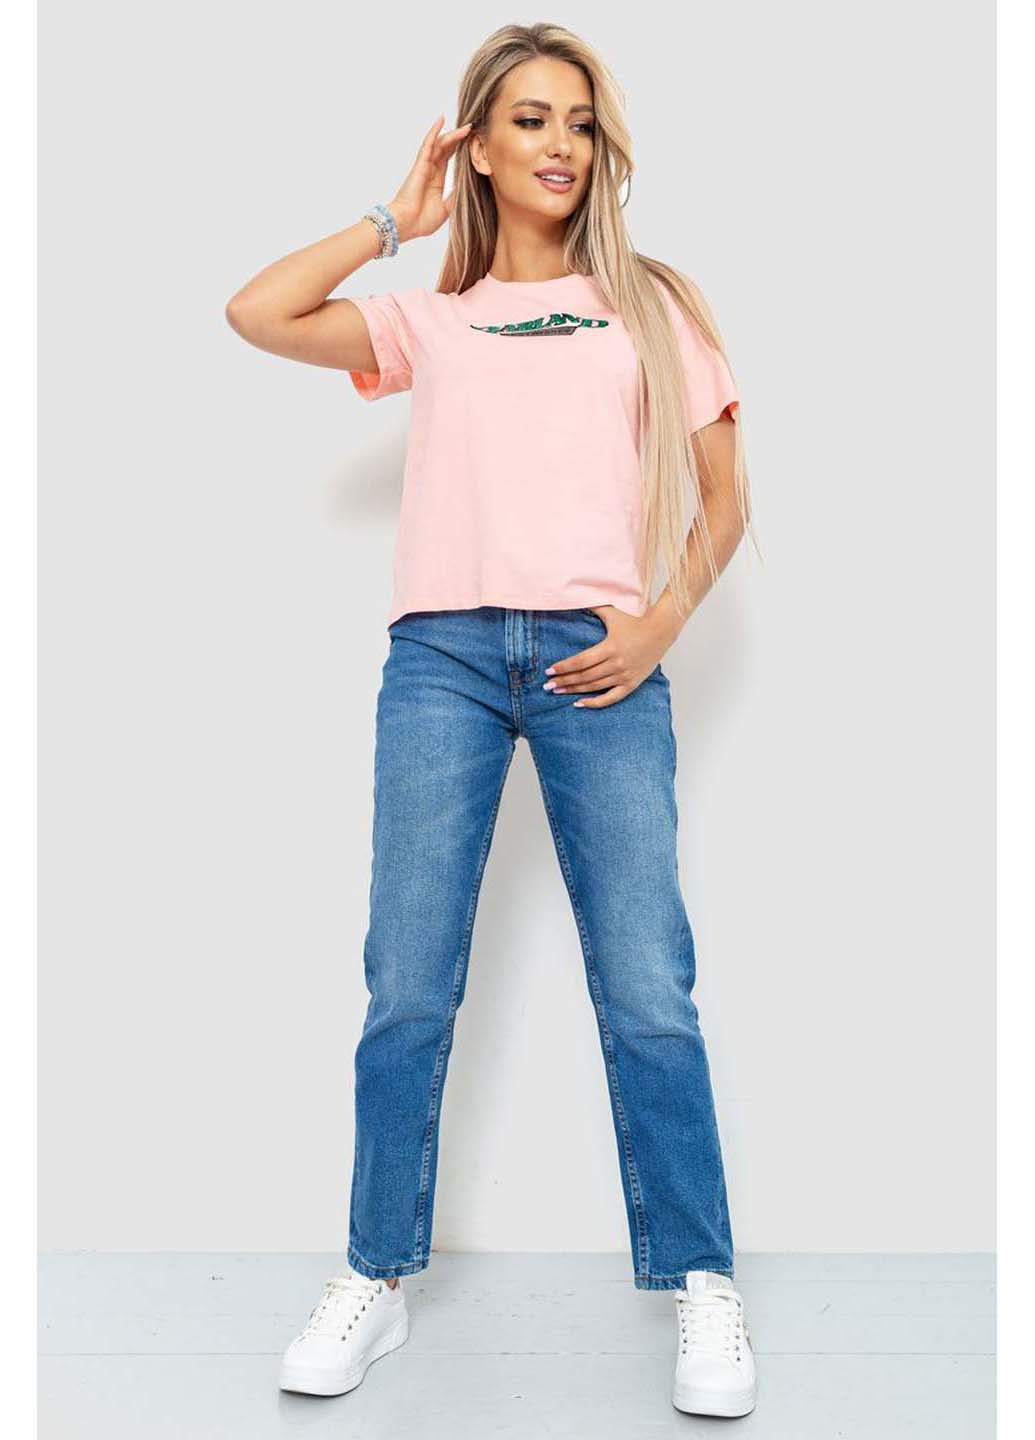 Розовая летняя футболка Ager